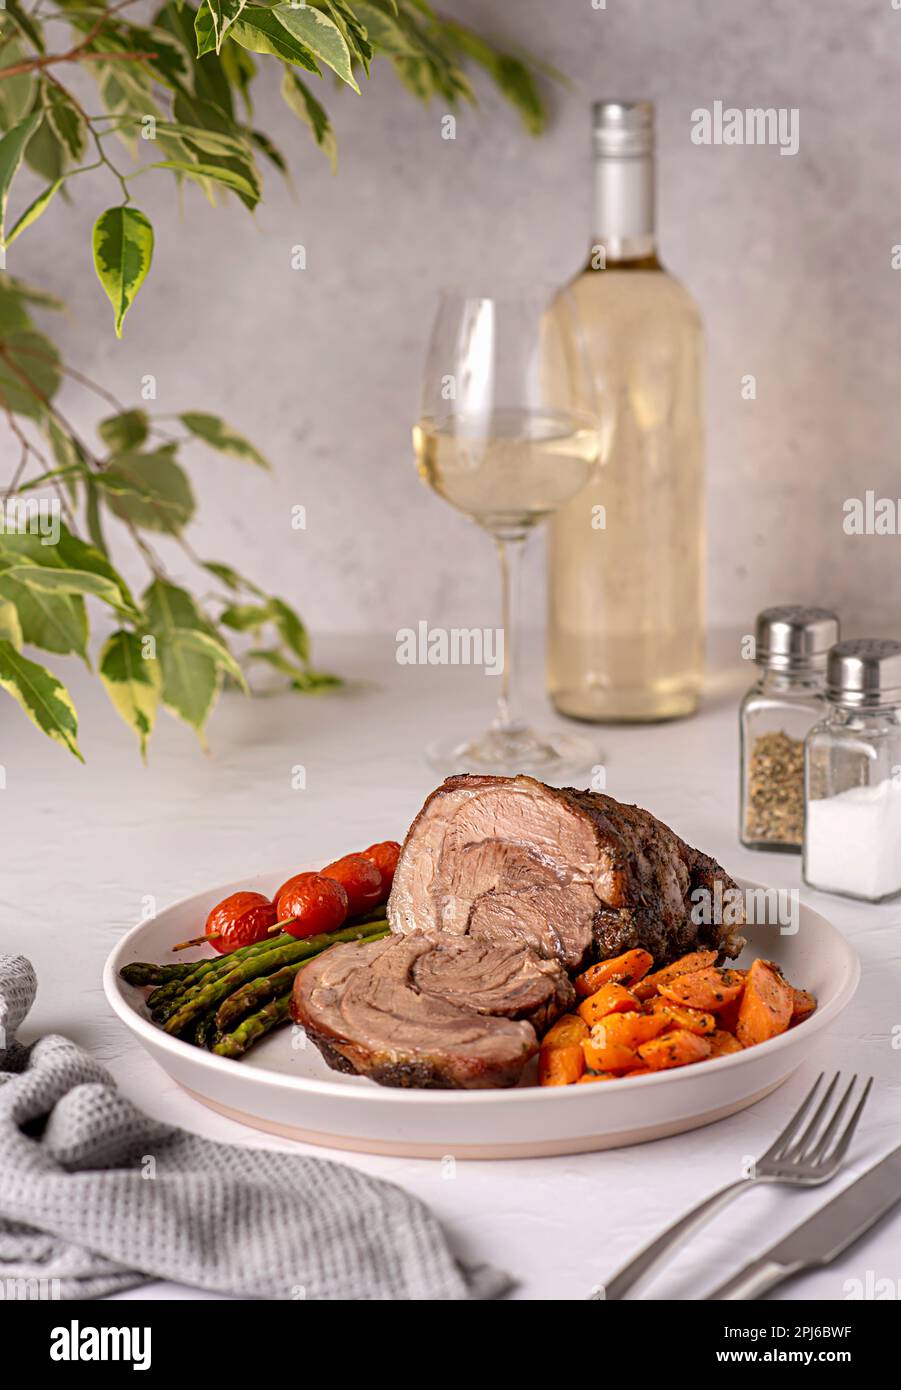 Fotografia alimentare di agnello arrosto, carota, asparagi, pomodoro, vino bianco, bottiglia, wineglass Foto Stock